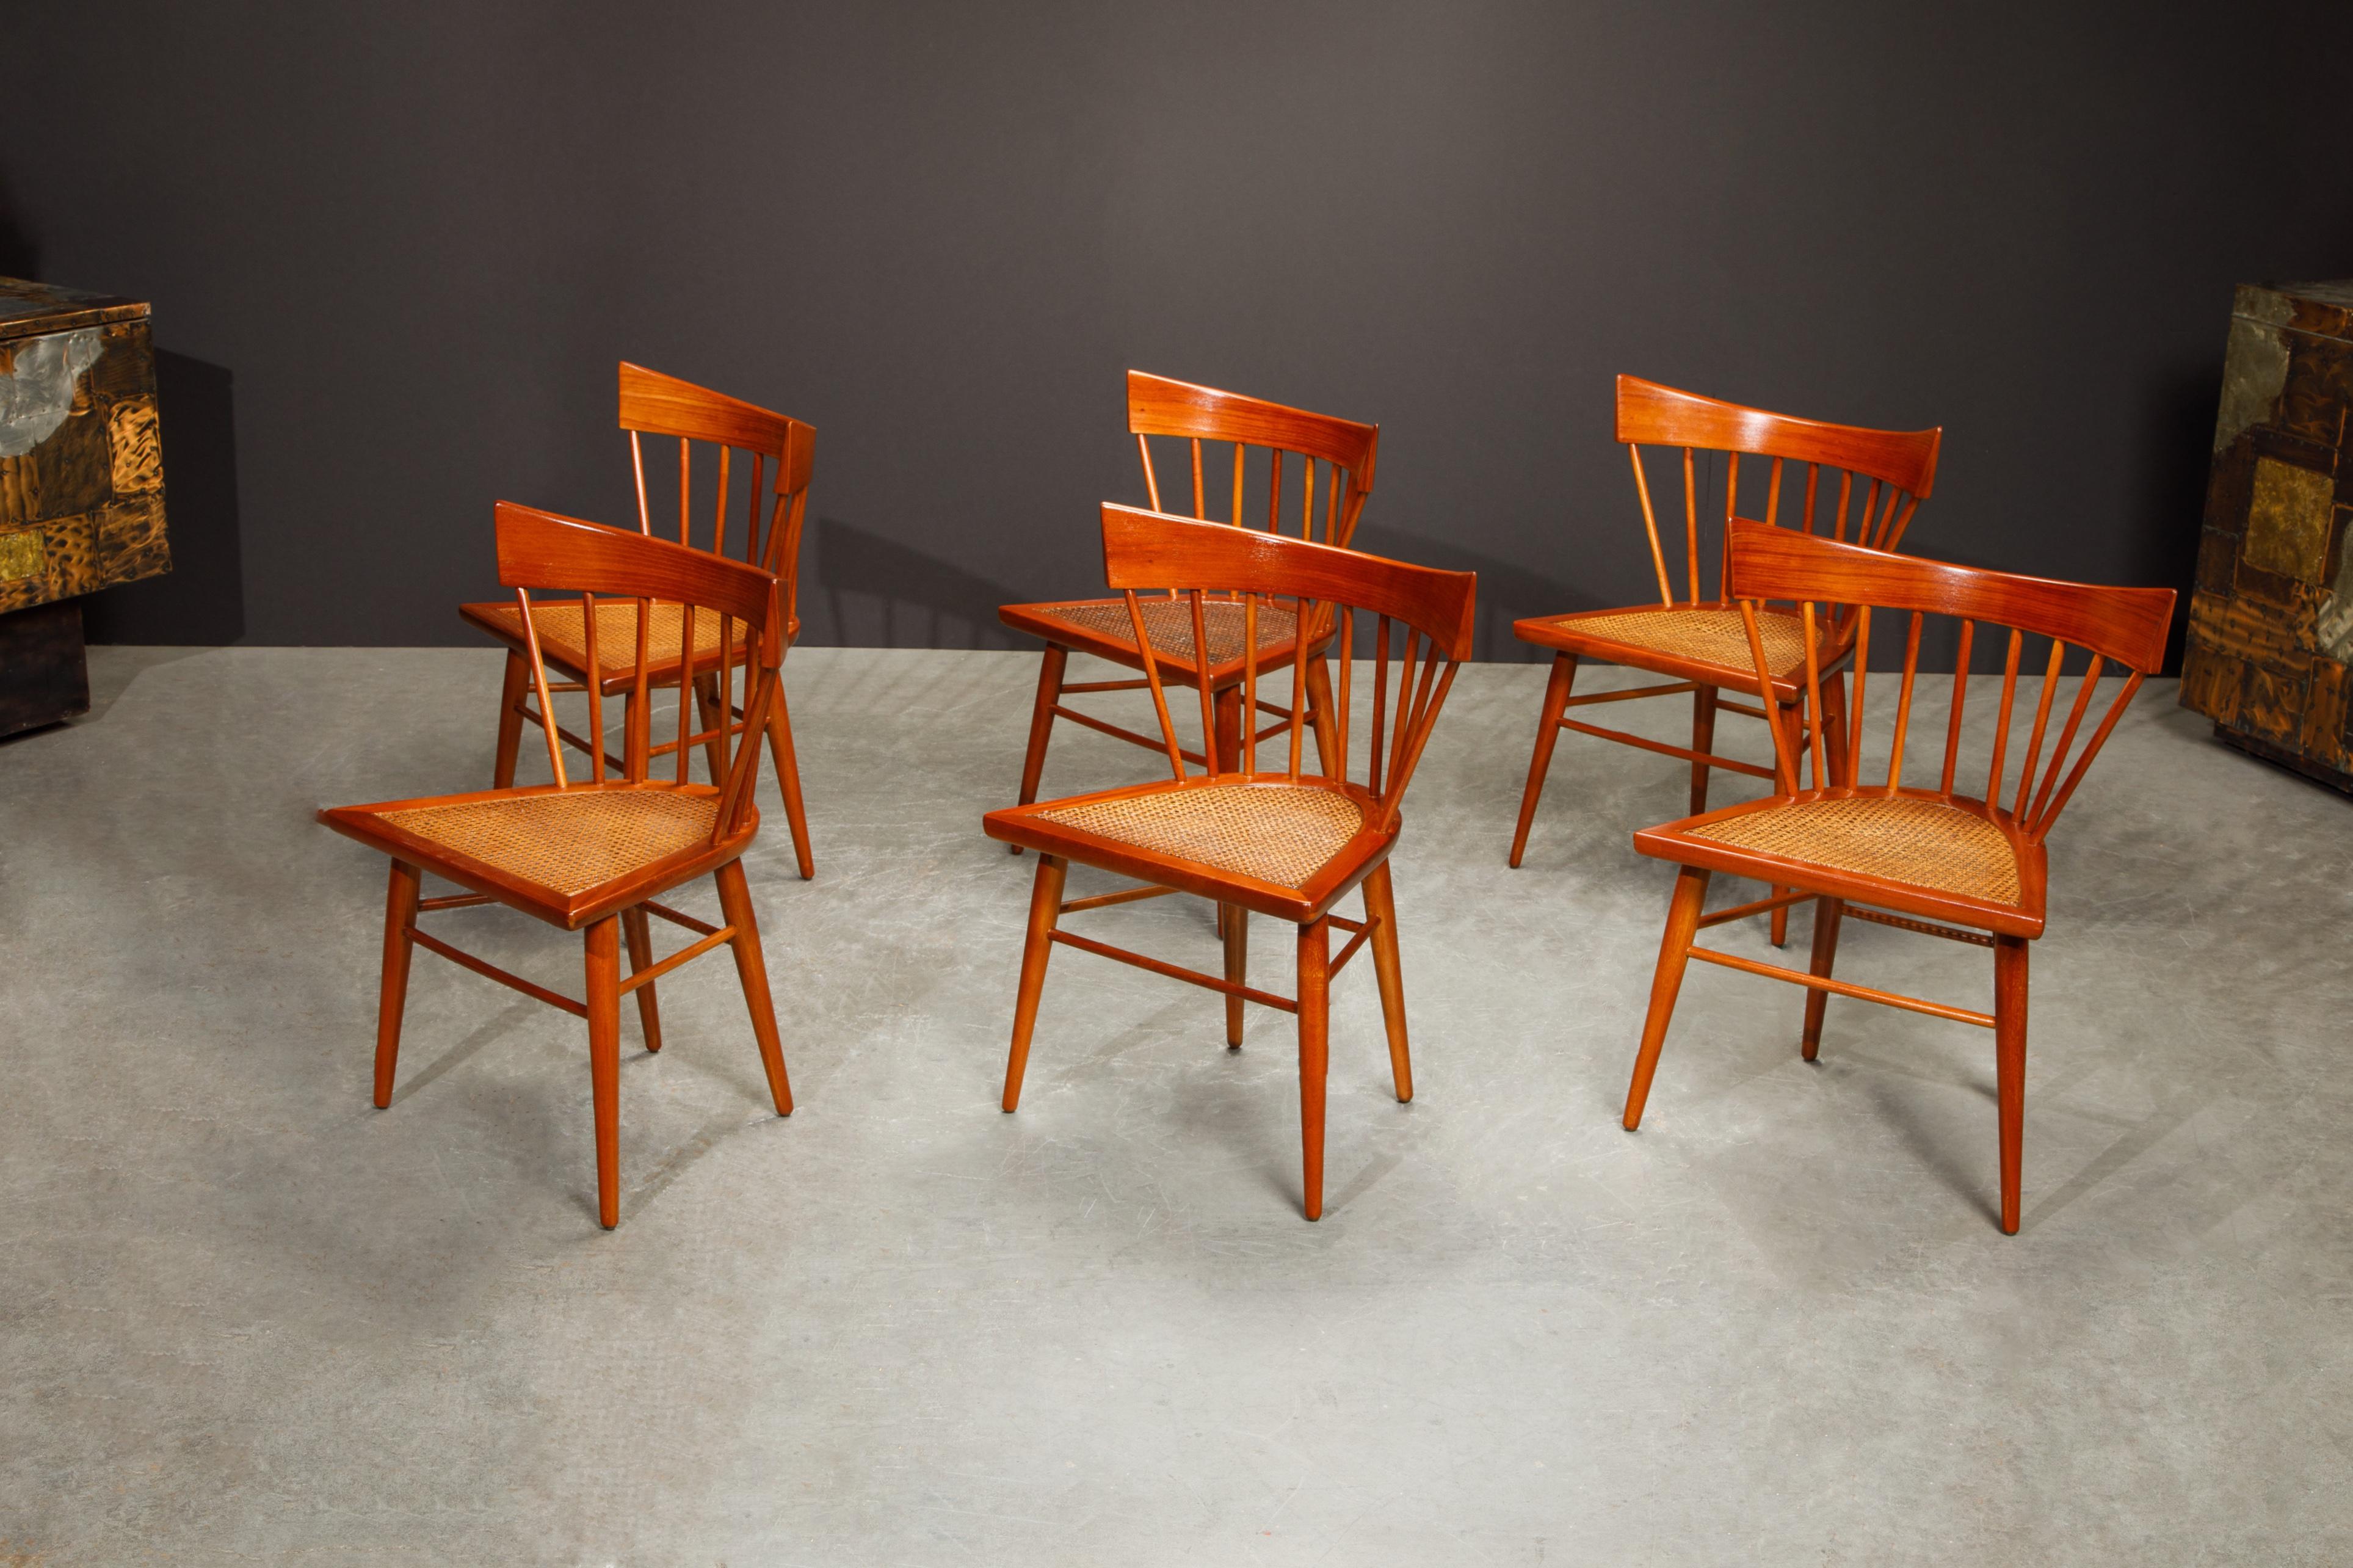 Dieses Set aus sechs klassischen Esszimmerstühlen aus Mahagoni und Rohr wurde in den 1950er Jahren vom schwedischen Designer Edmond J. Spence entworfen und von Industria Mueblera in Mexiko hergestellt. 

Dieses lebhafte Esszimmerstuhlset aus